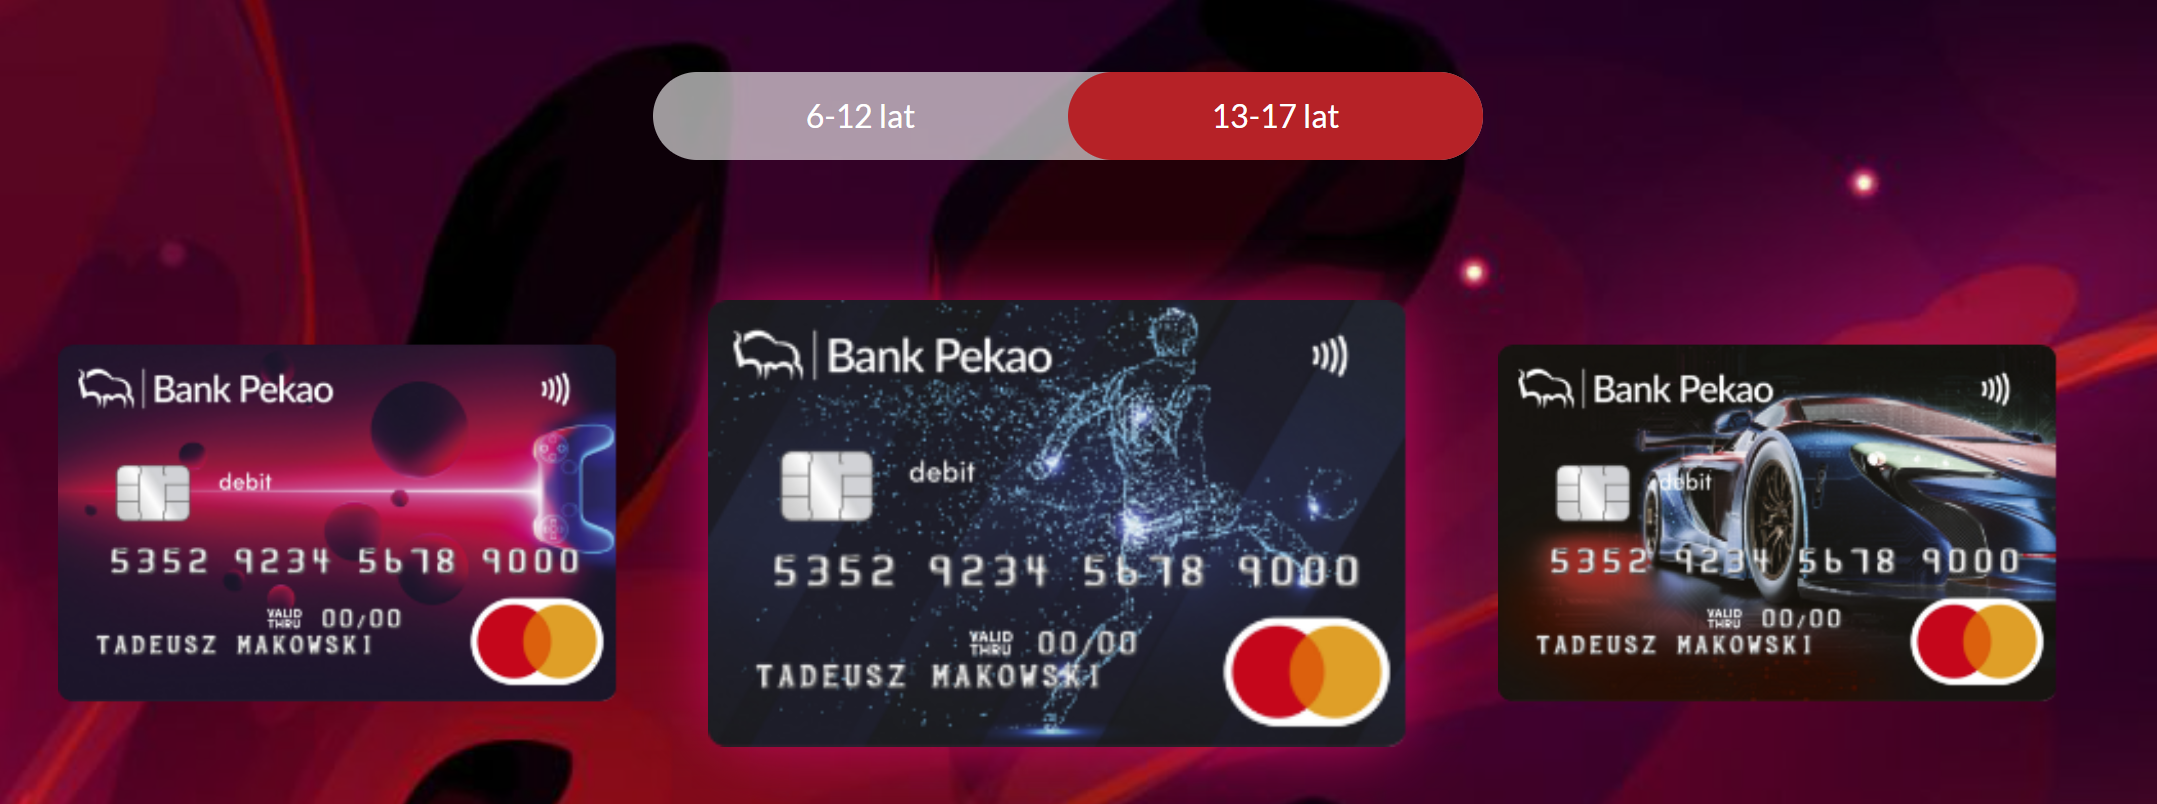 karta dla graczy w Banku Pekao - ciemne karty debetowe z gamingowym wizerunkiem